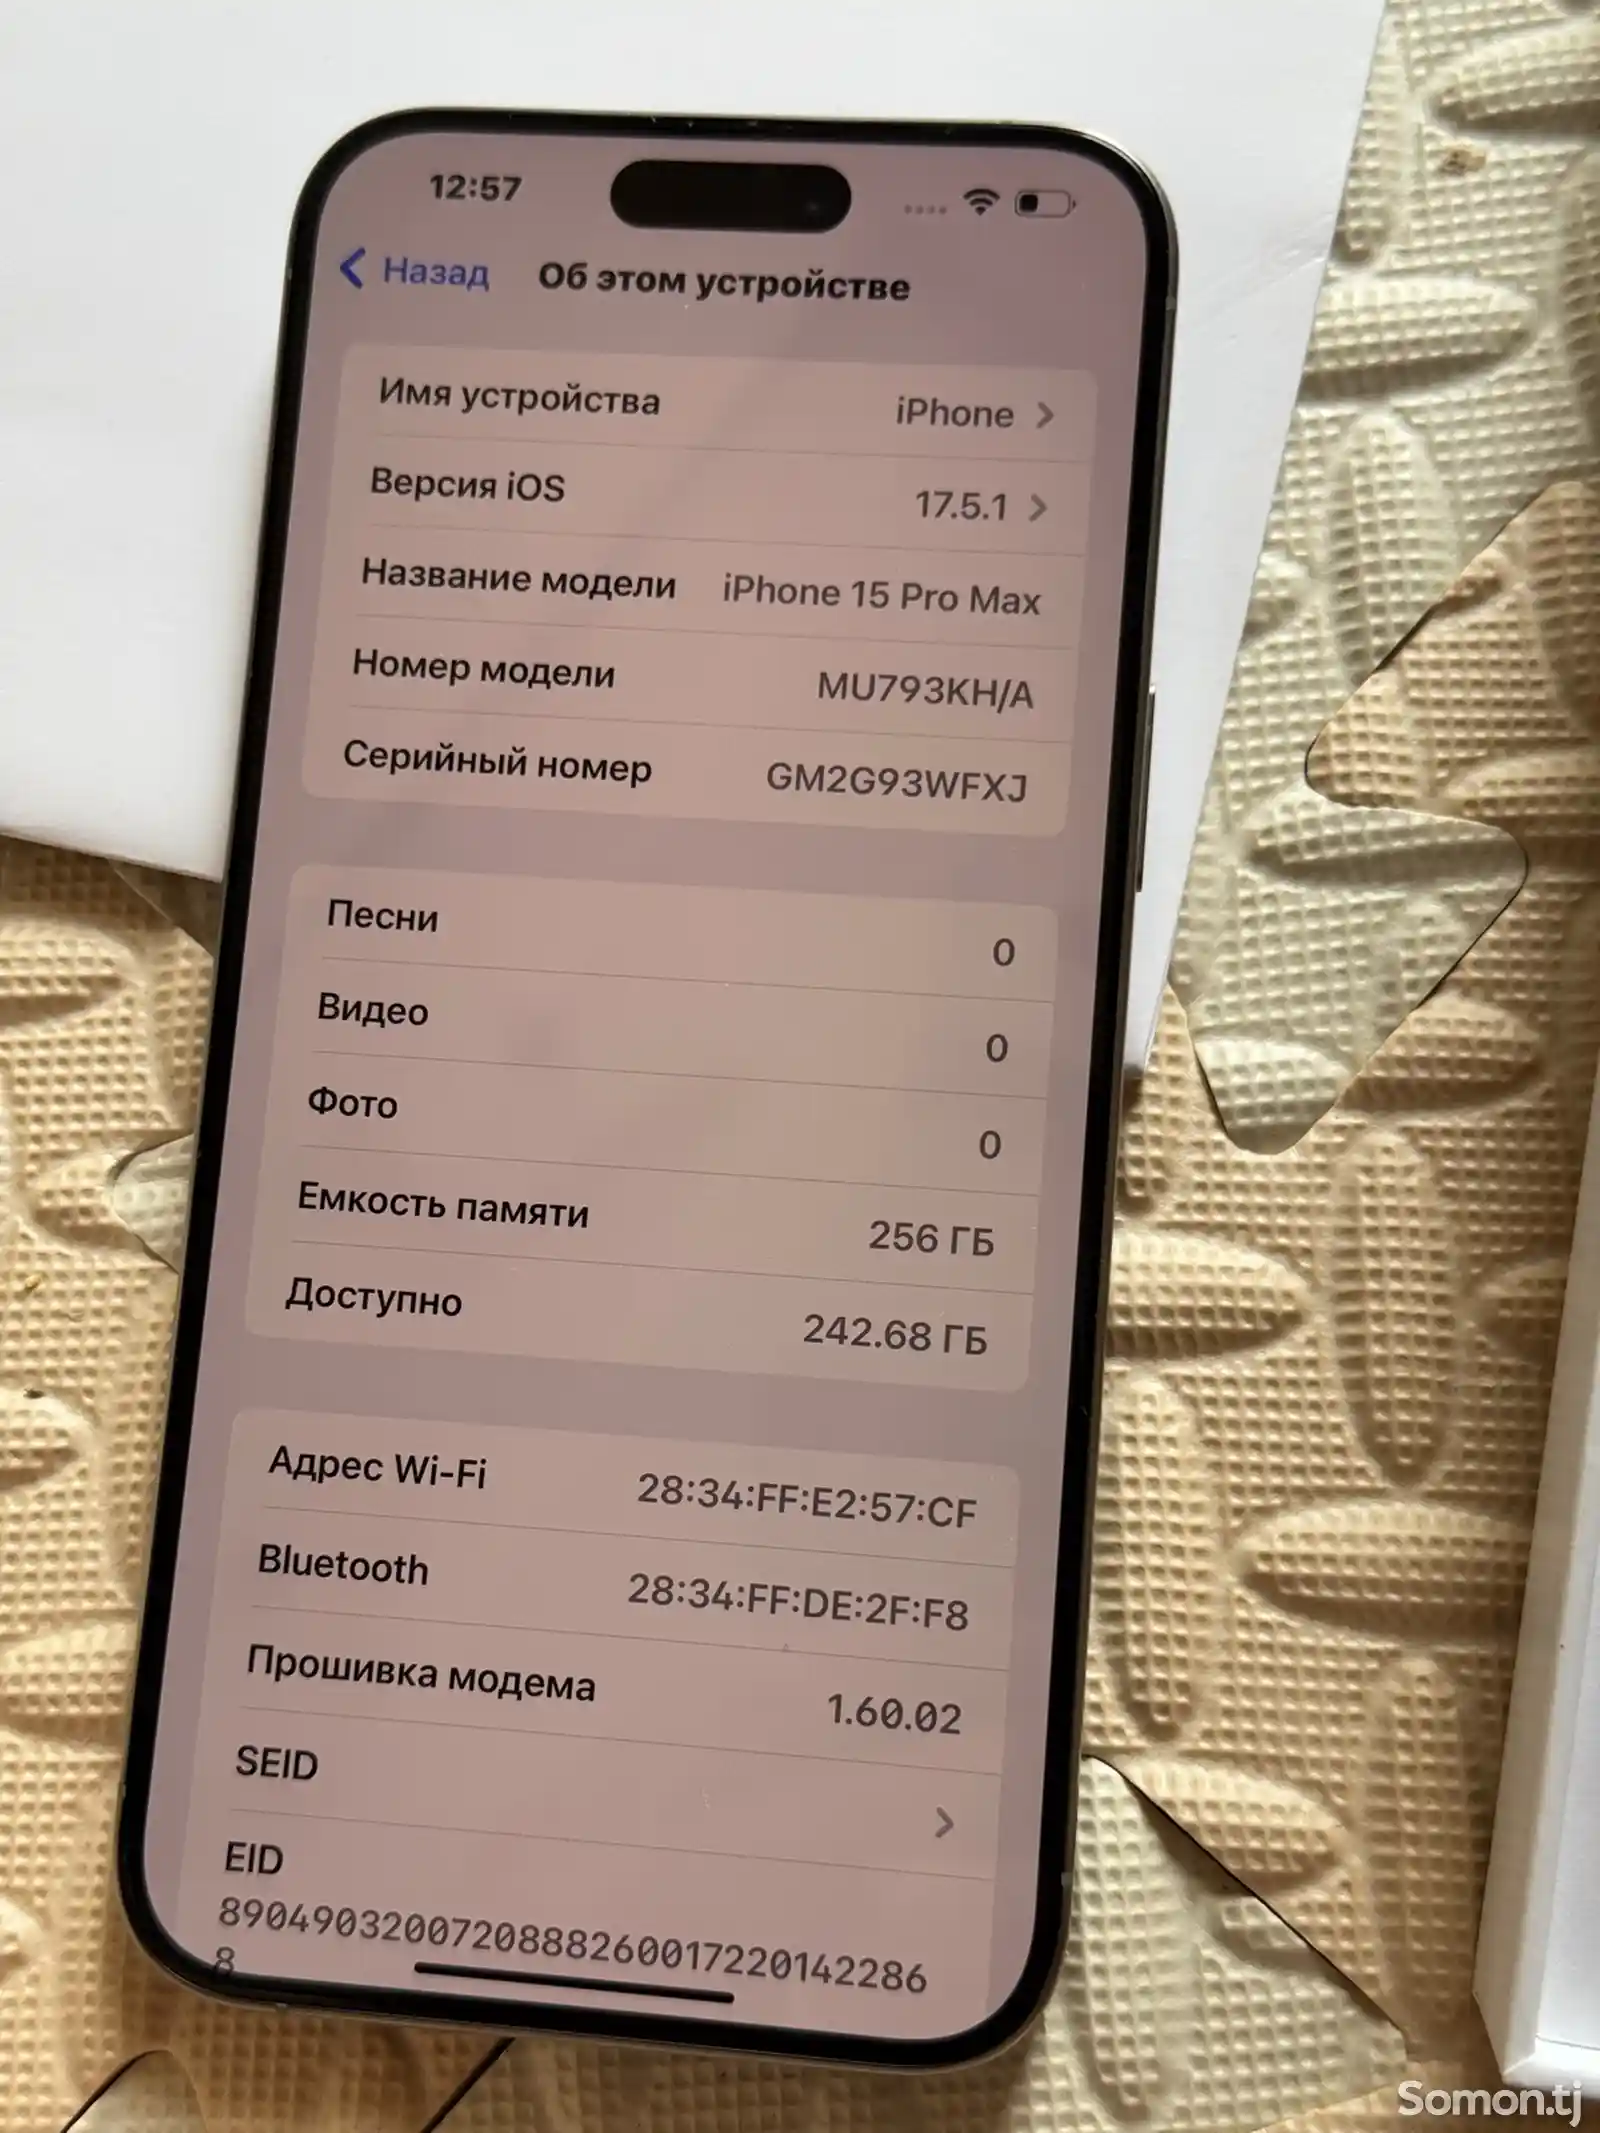 Apple iPhone 15 Pro Max, 256 gb, Natural Titanium-8